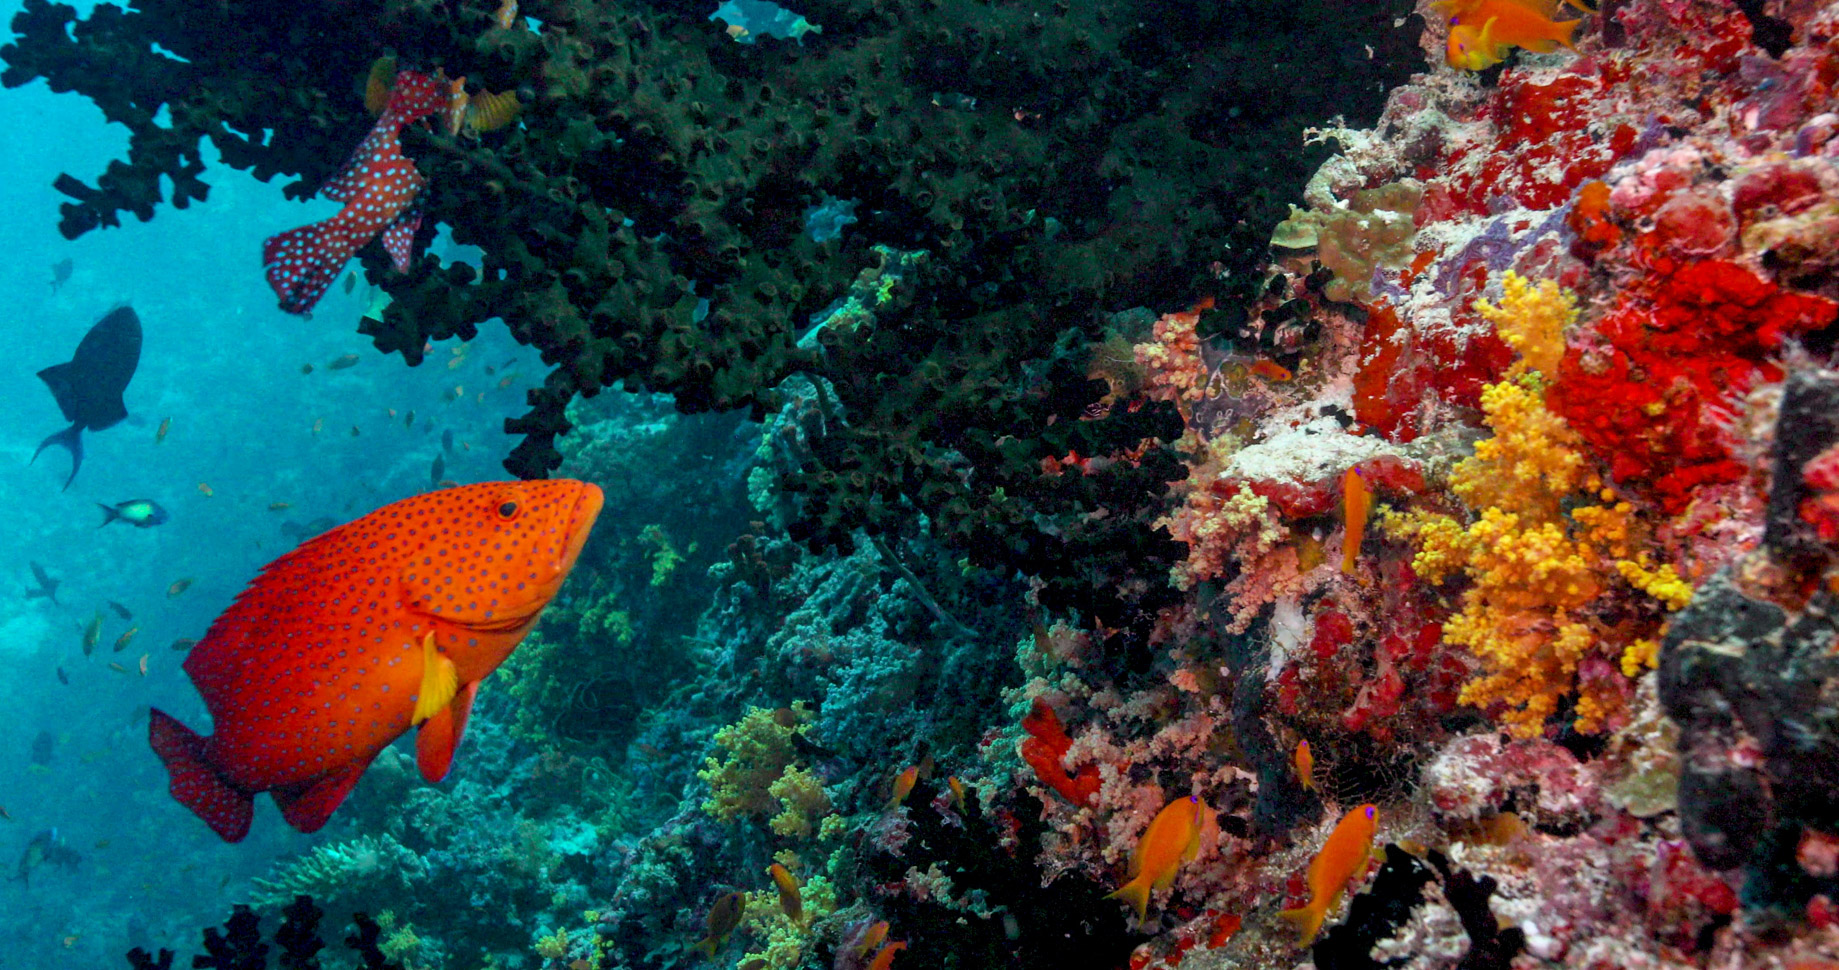 Anantara Kihavah Maldives Villas Resort – Baa Atoll, Maldives – House Reef Aquatic Wonderland